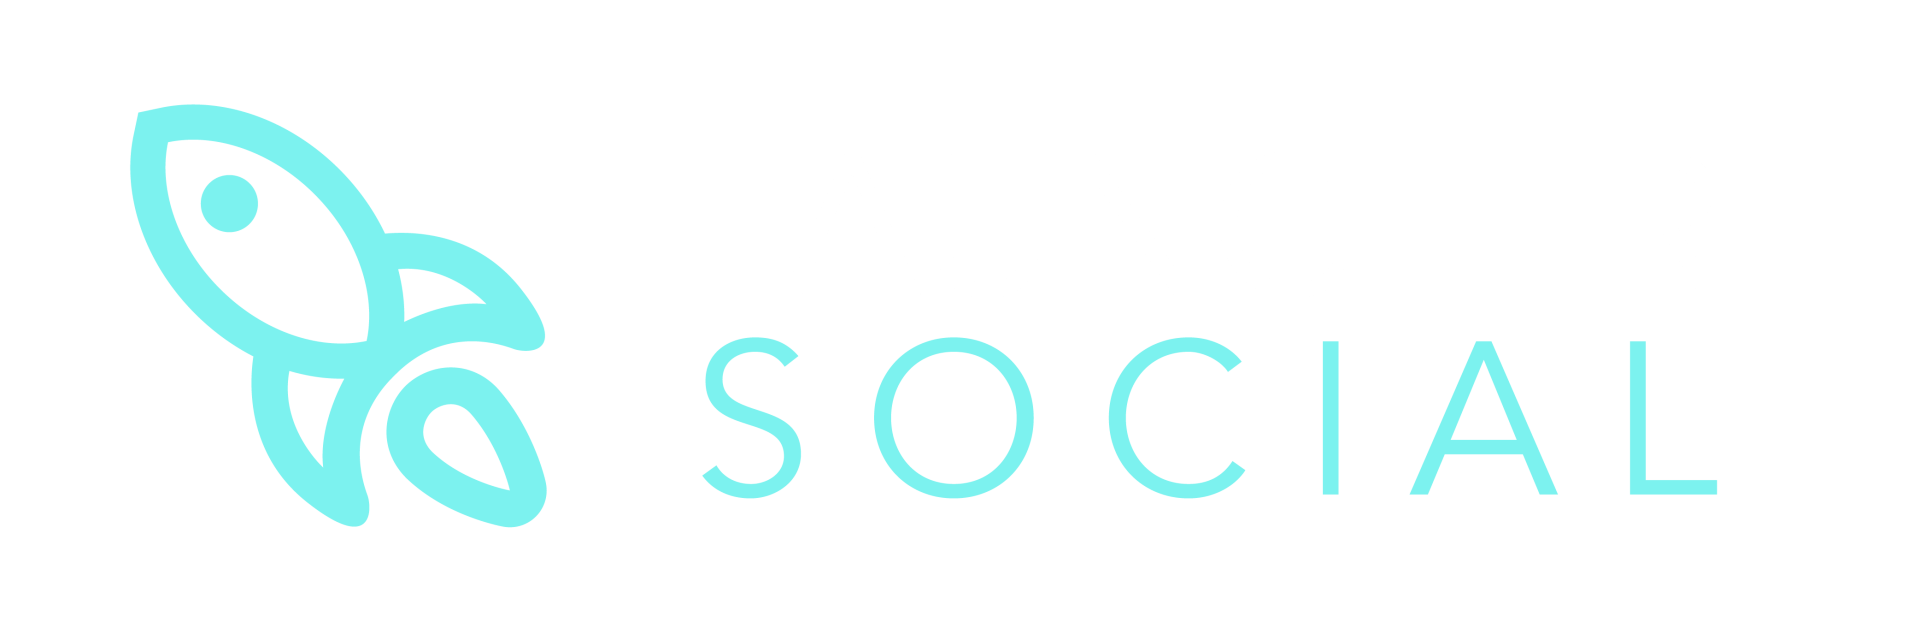 Launcher Social - Social Media Marketing